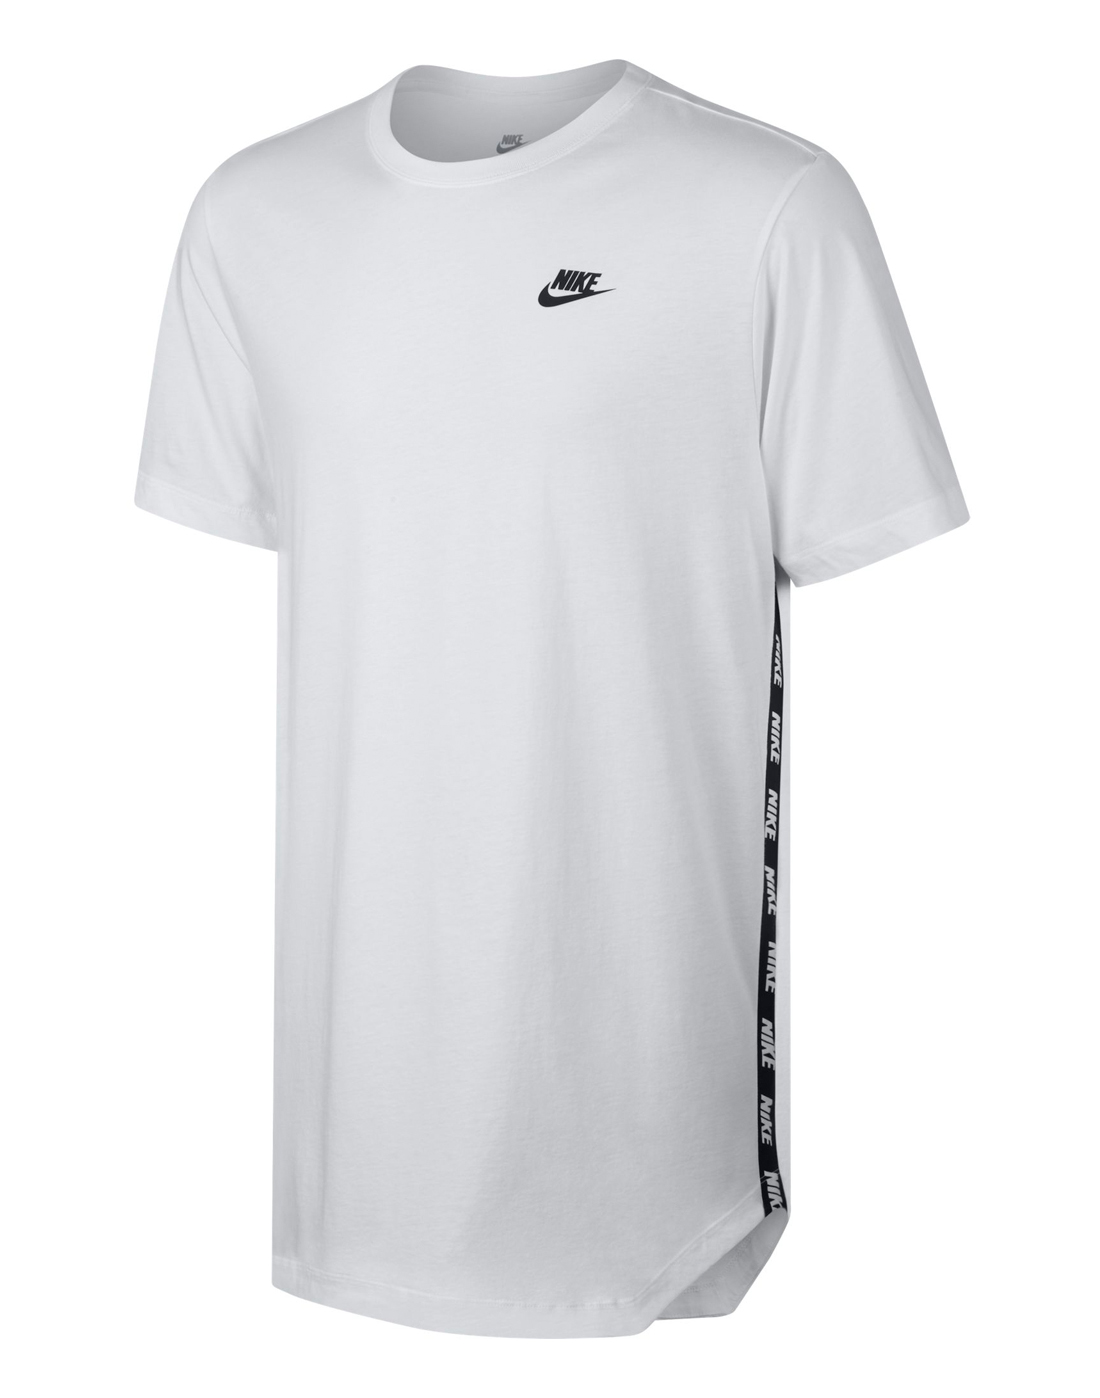 Nike Mens AV Tee - White | Life Style Sports UK